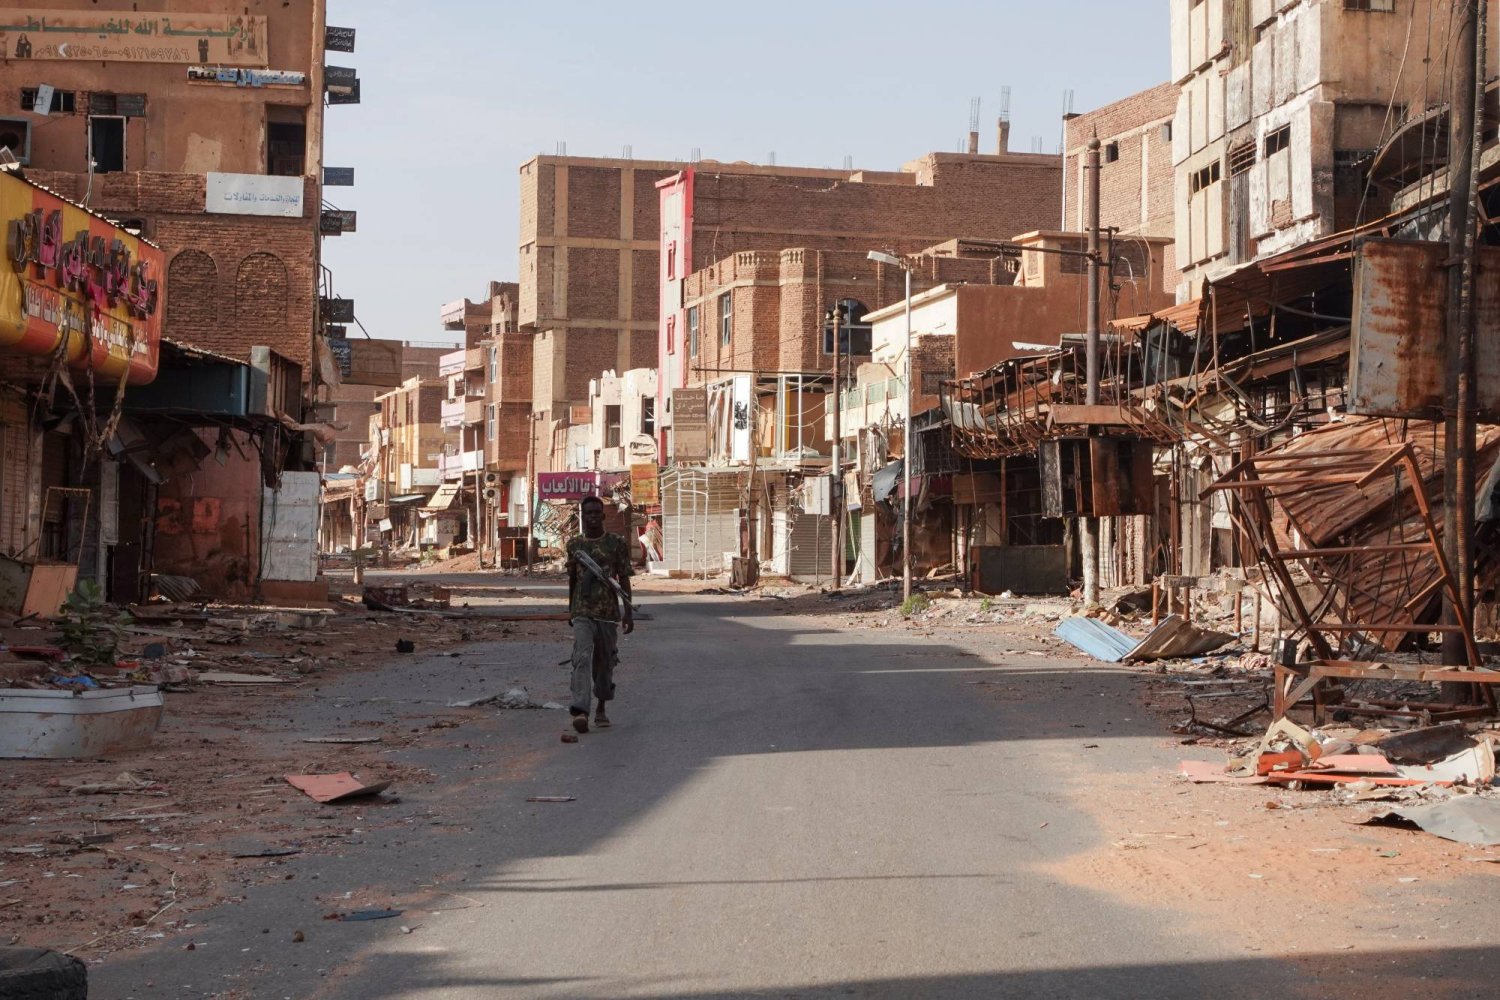 عنصر من الجيش السوداني يمرّ بين منازل متضررة جراء الحرب مطلع الشهر في مدينة أم درمان بالخرطوم (رويترز)